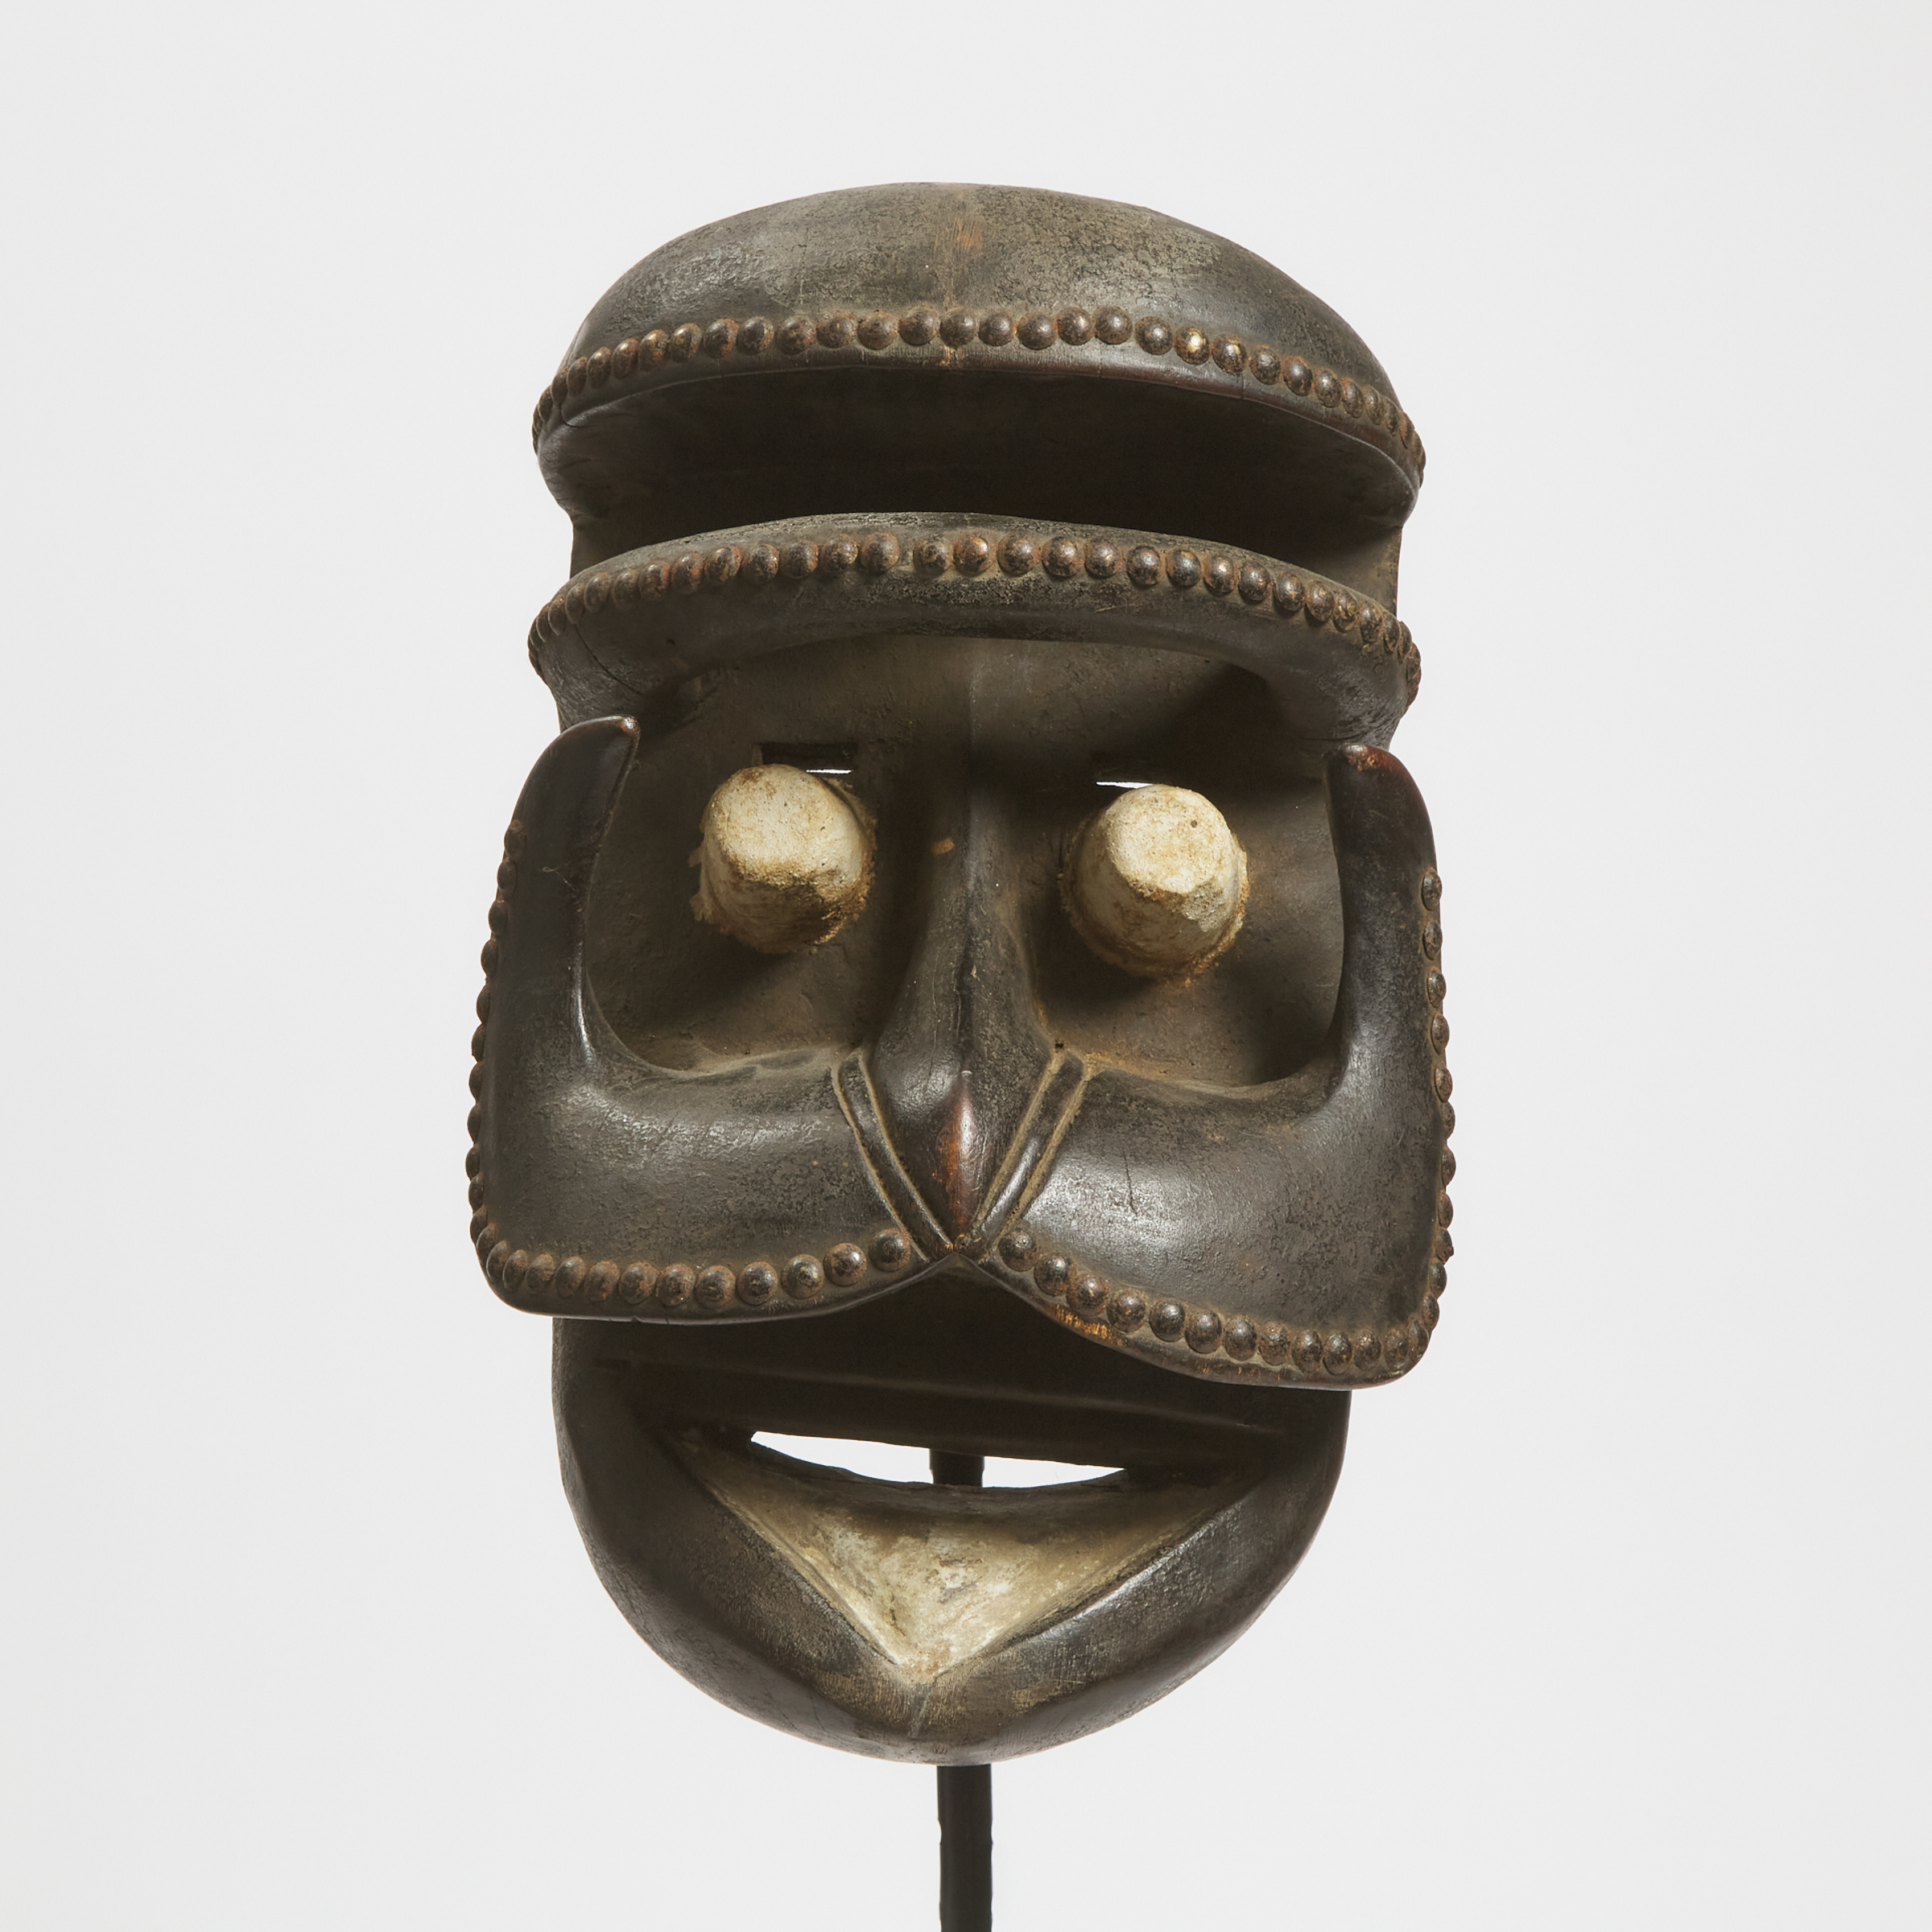 Bete Mask, Ivory Coast, West Africa,